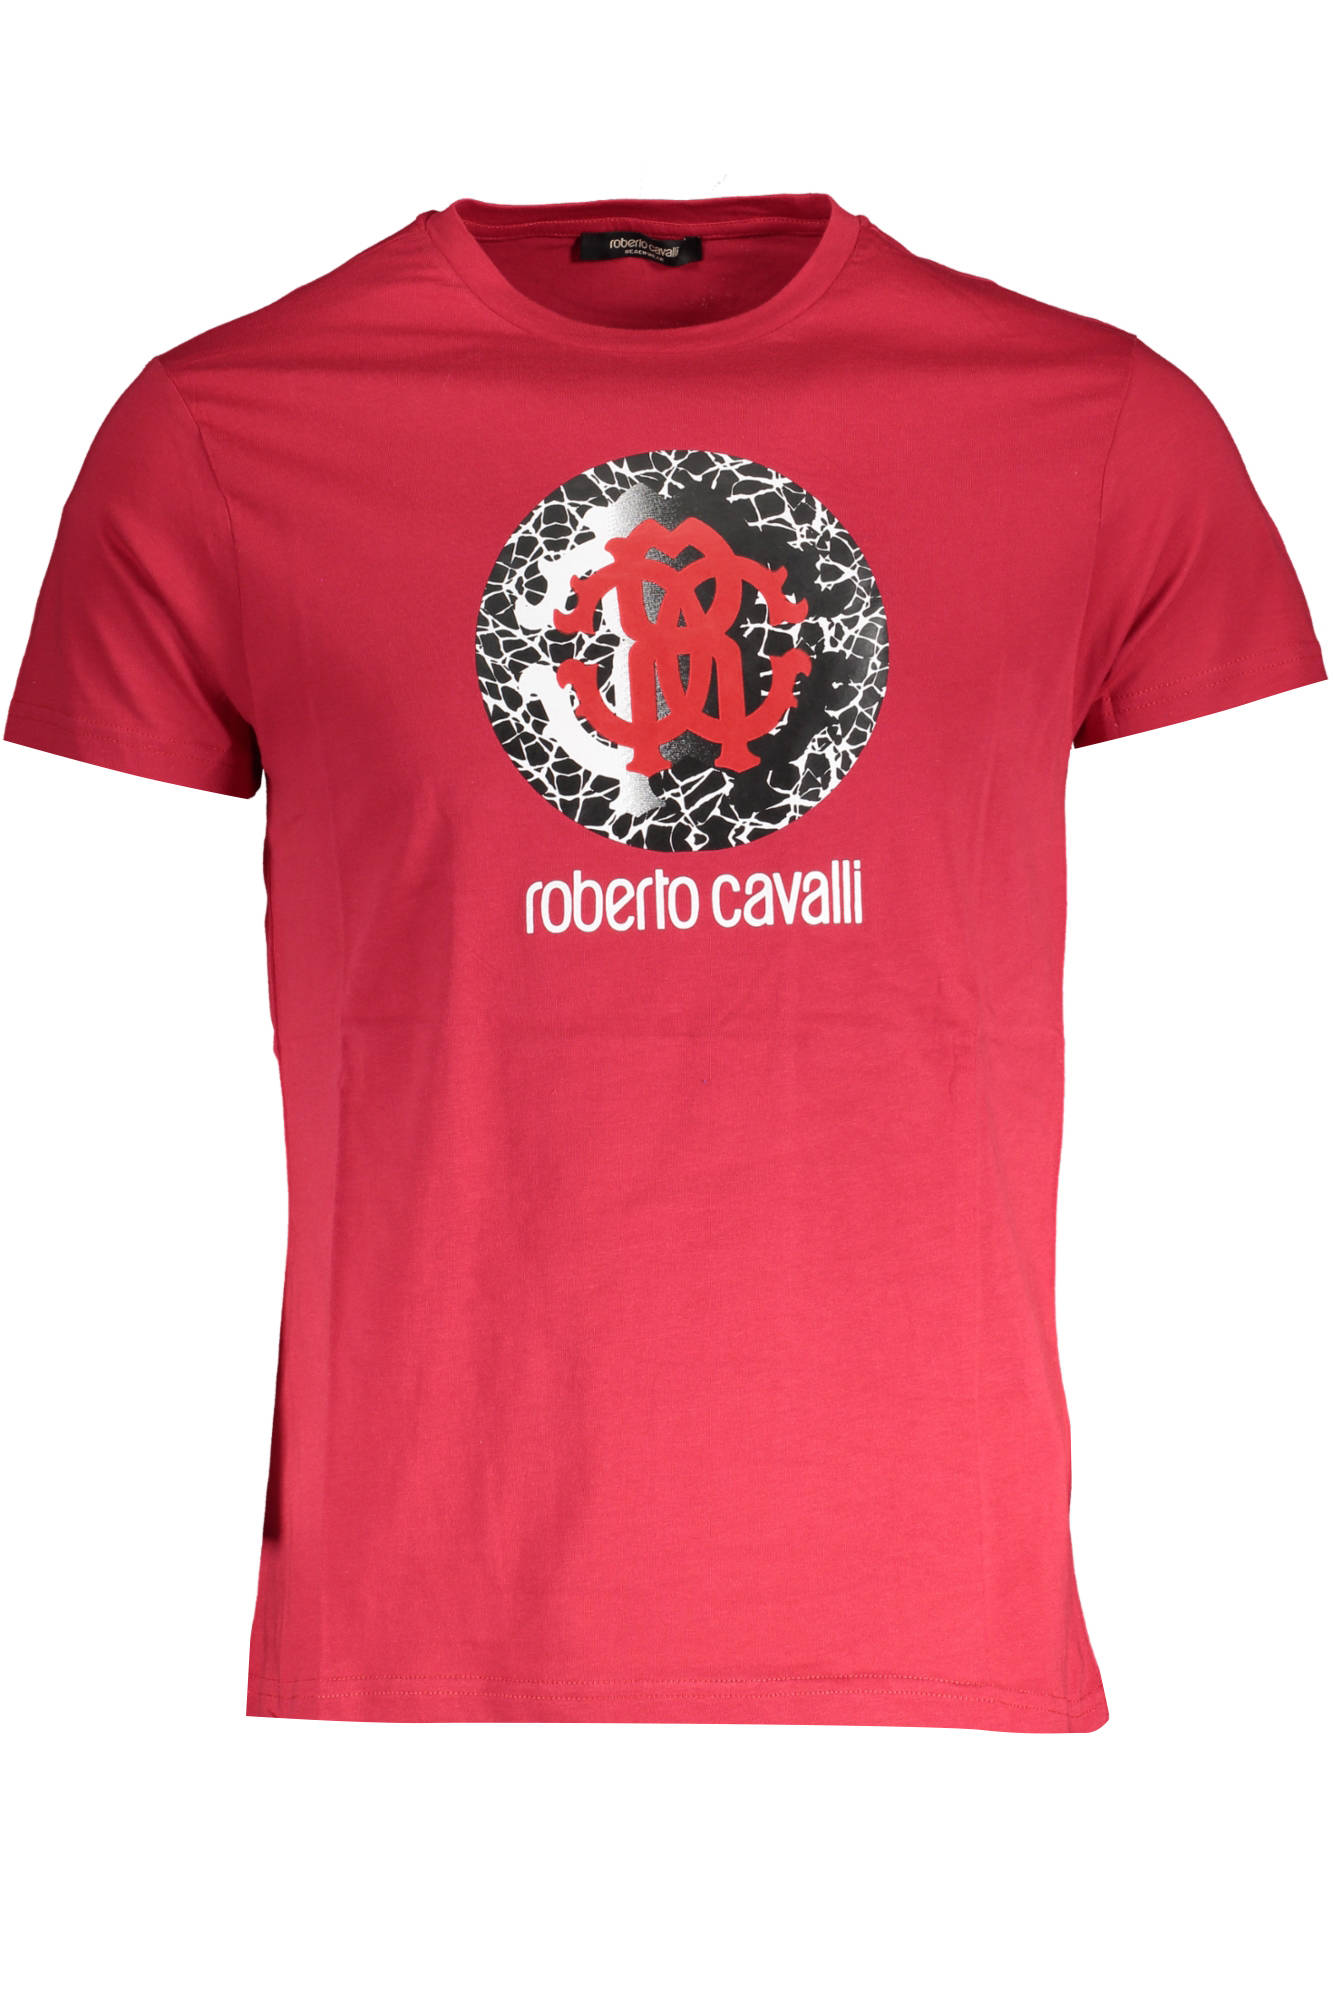 Tričko ROBERTO CAVALLI tričko s krátkým rukávem ROSSO